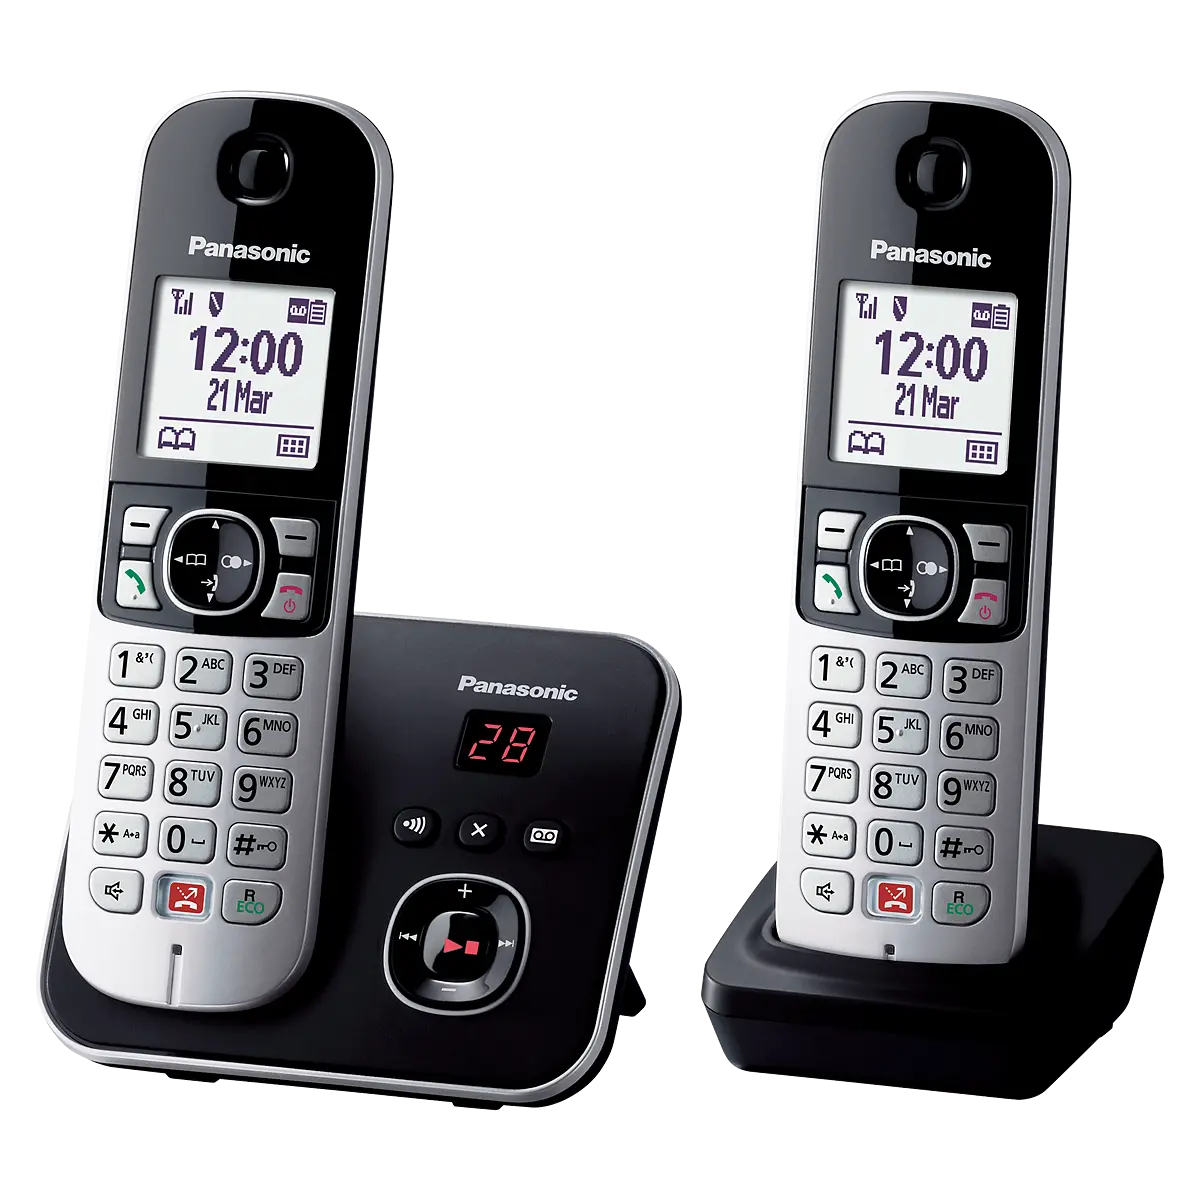 Téléphone filaire/sans fil Panasonic DECT 6,0 avec répondeur et